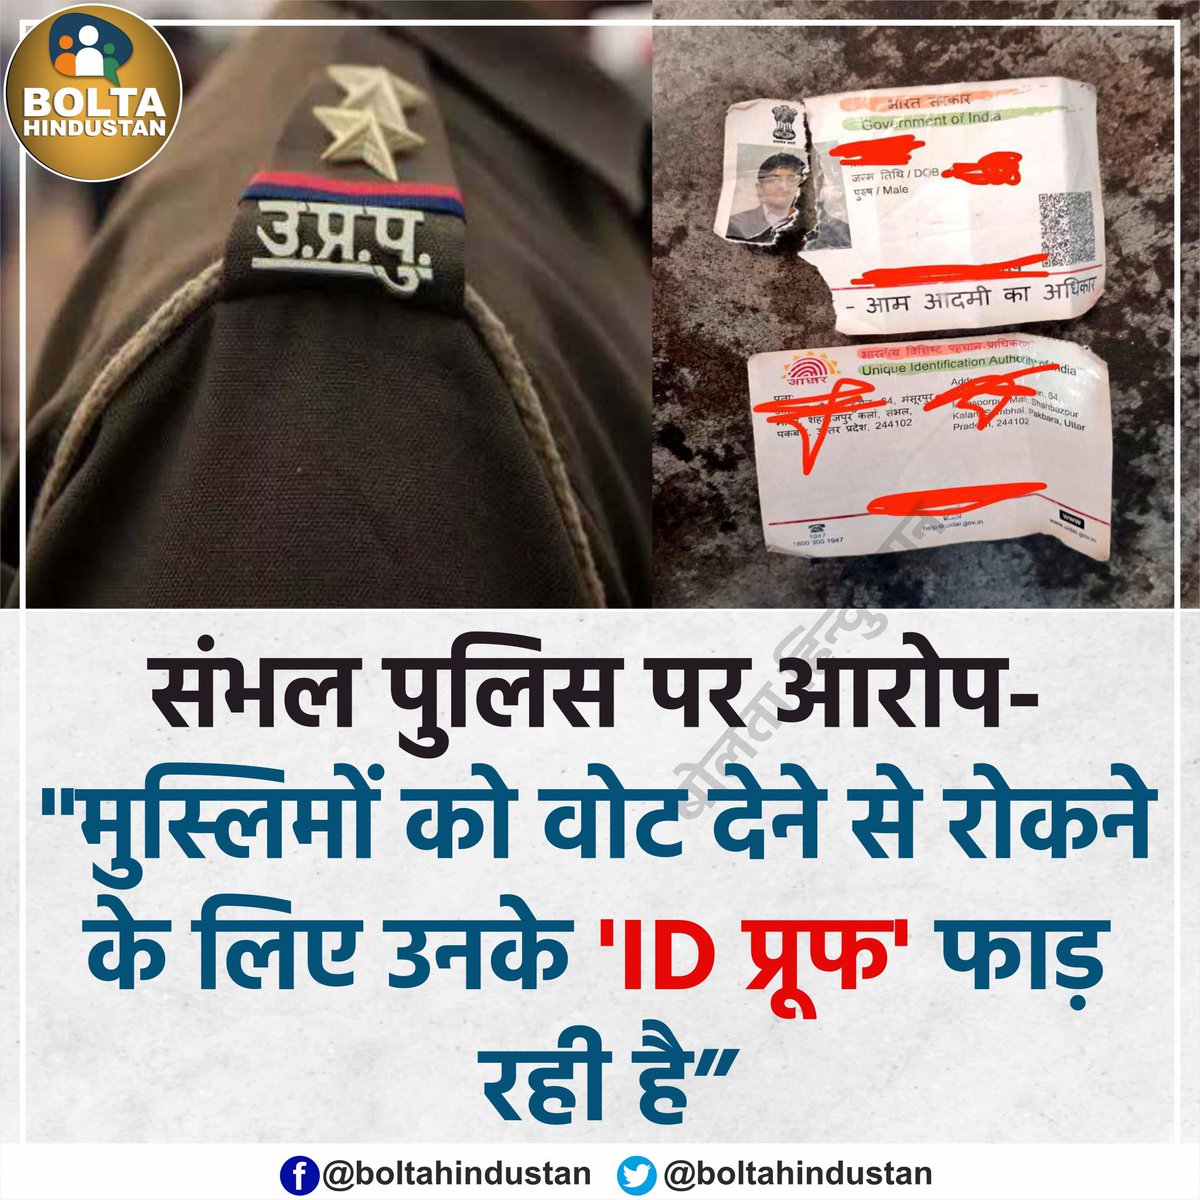 संभल पुलिस पर आरोप- मुस्लिम वोटर्स के 'ID प्रूफ' फाड़ रही है!